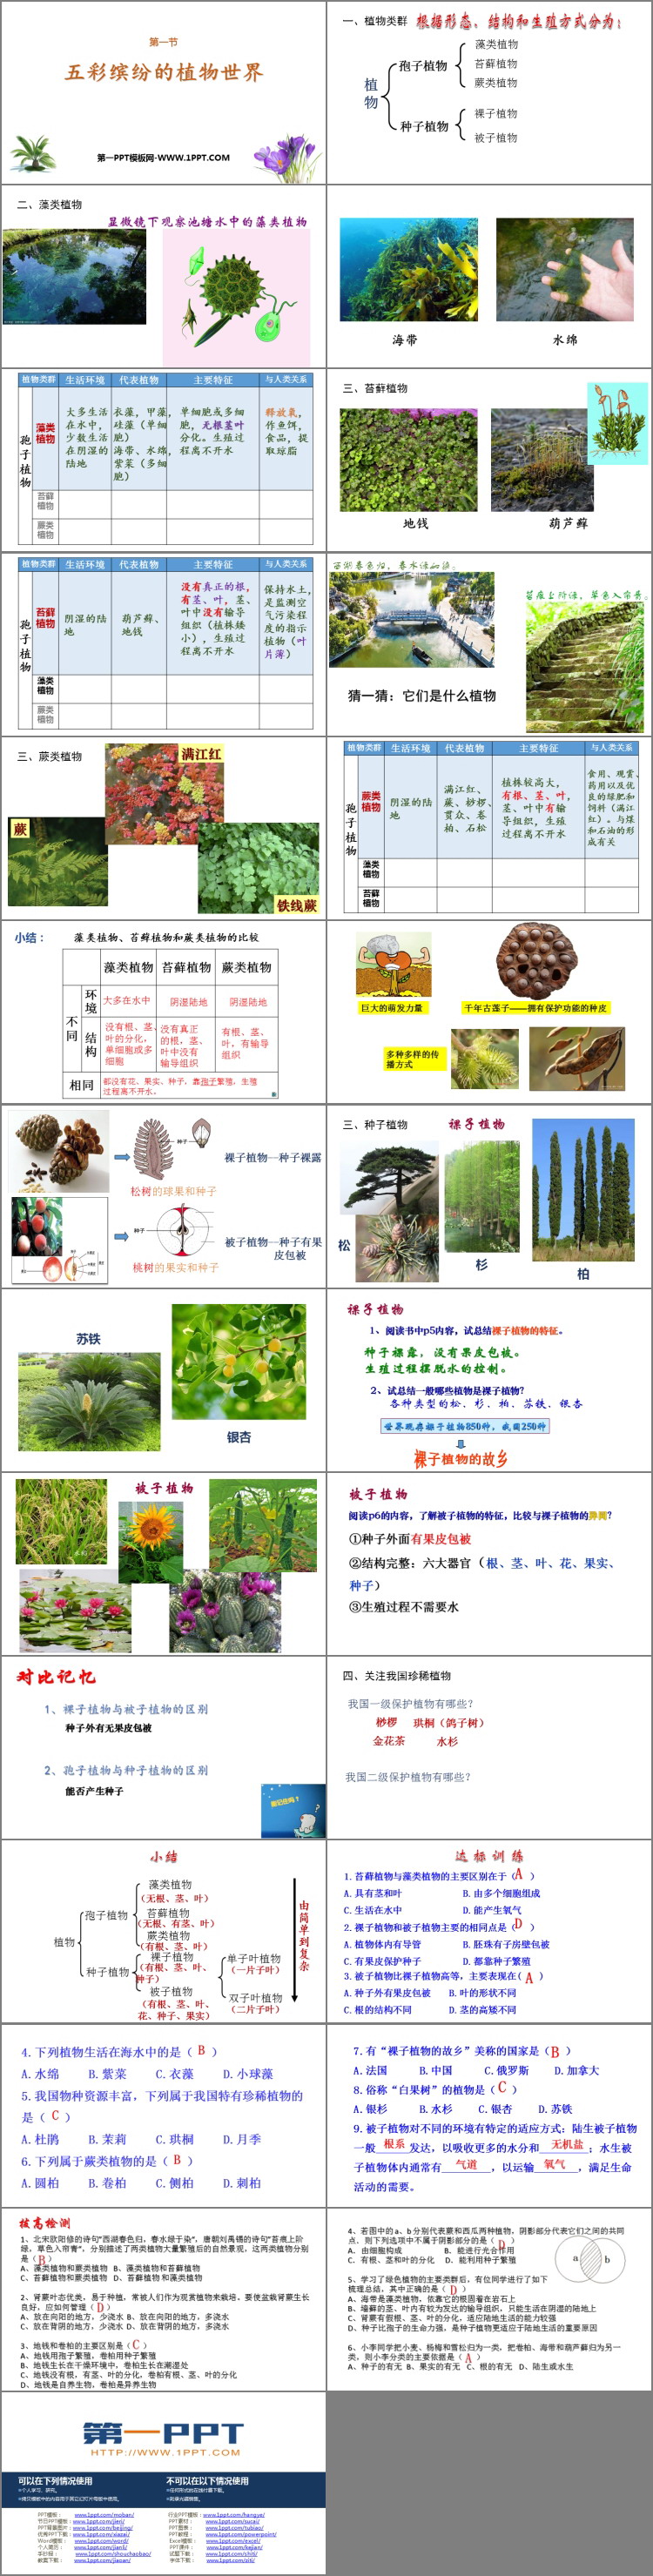 《五彩缤纷的植物世界》PPT课件下载-预览图02